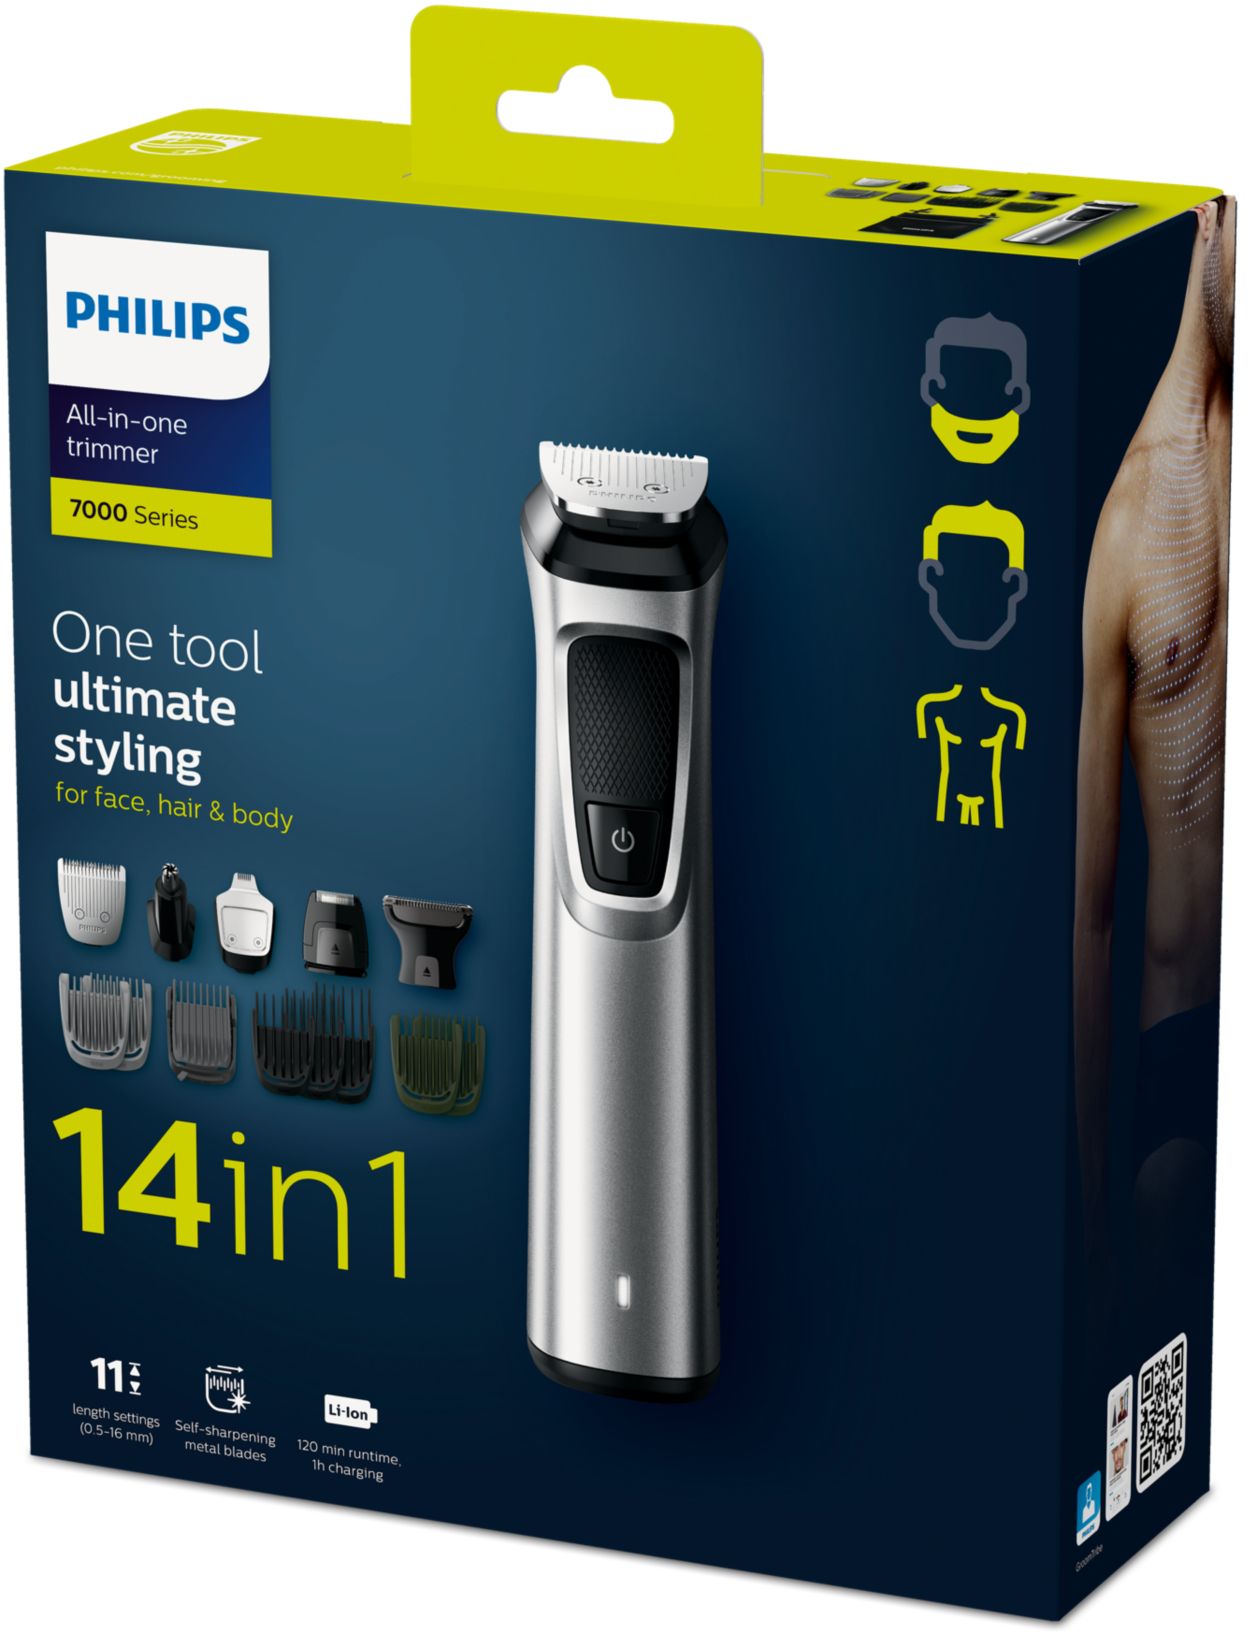 Inverfin - La Afeitadora Philips Multigroom es todo en 1 🤩